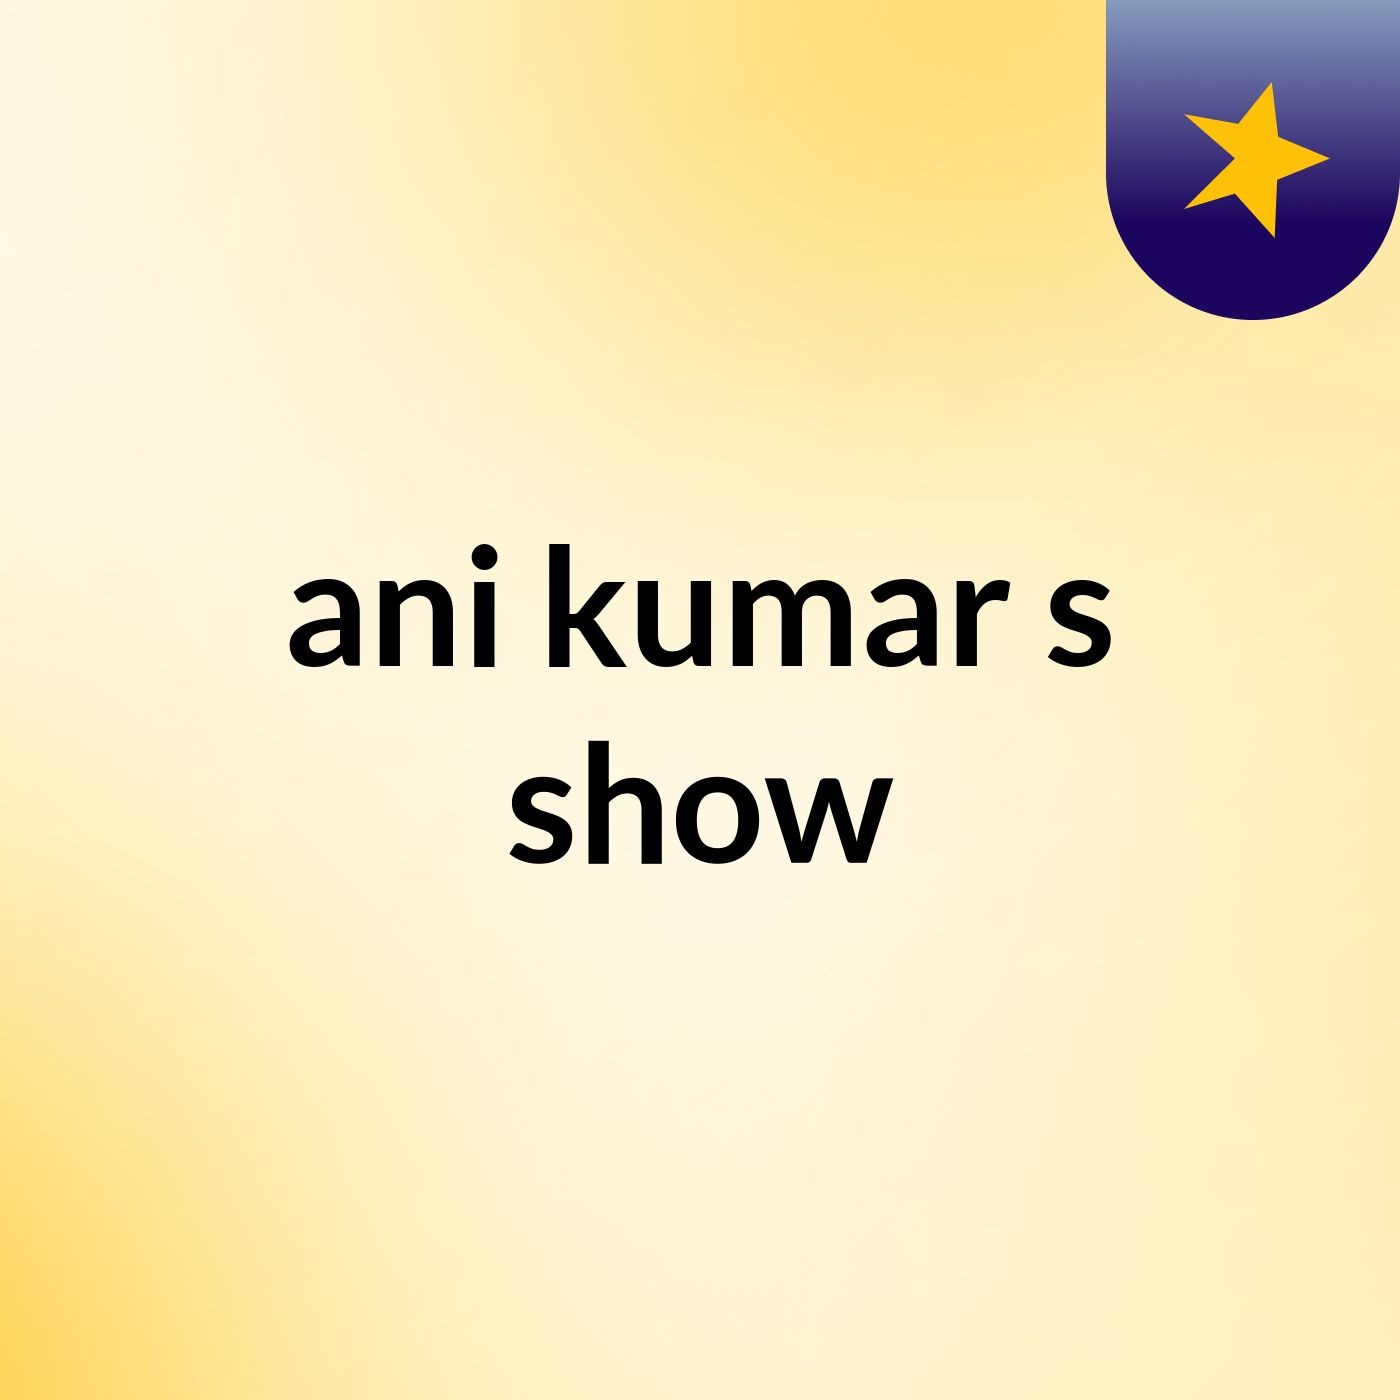 ani kumar's show